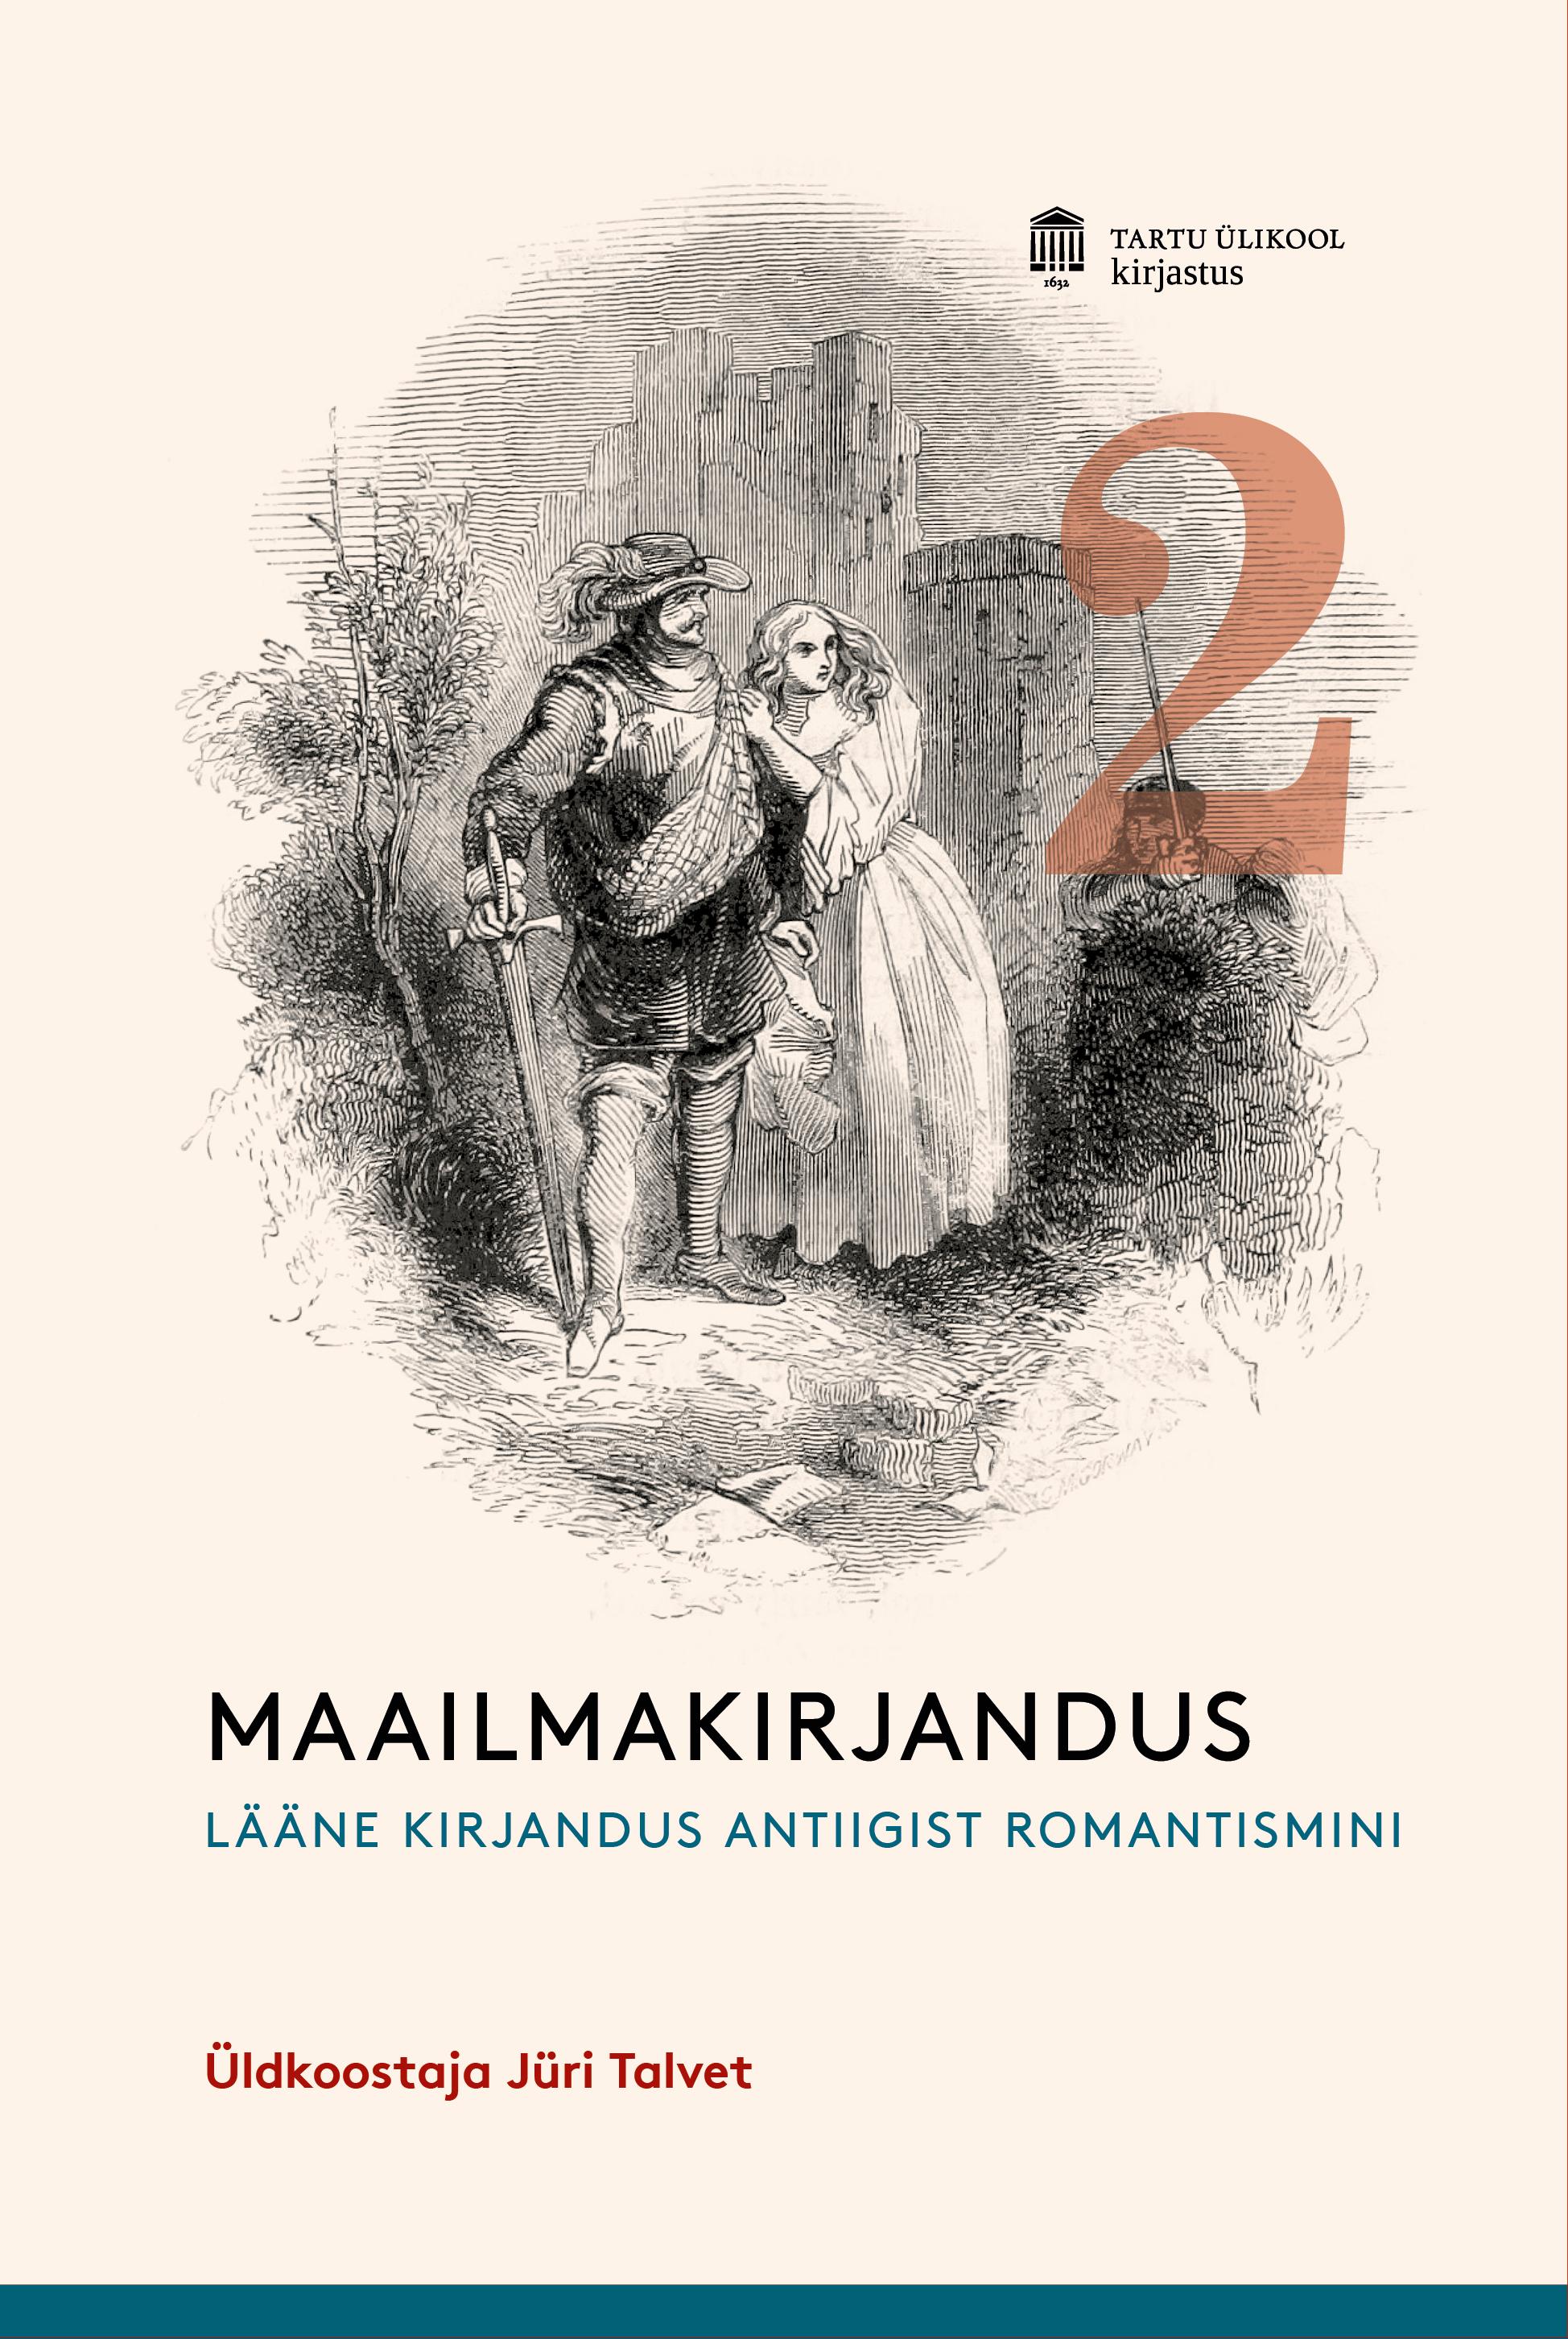 MAAILMAKIRJANDUS MUINASAJAST TÄNAPÄEVANI II. LÄÄNEKIRJANDUS ANTIIGIST ROMANTISMINI